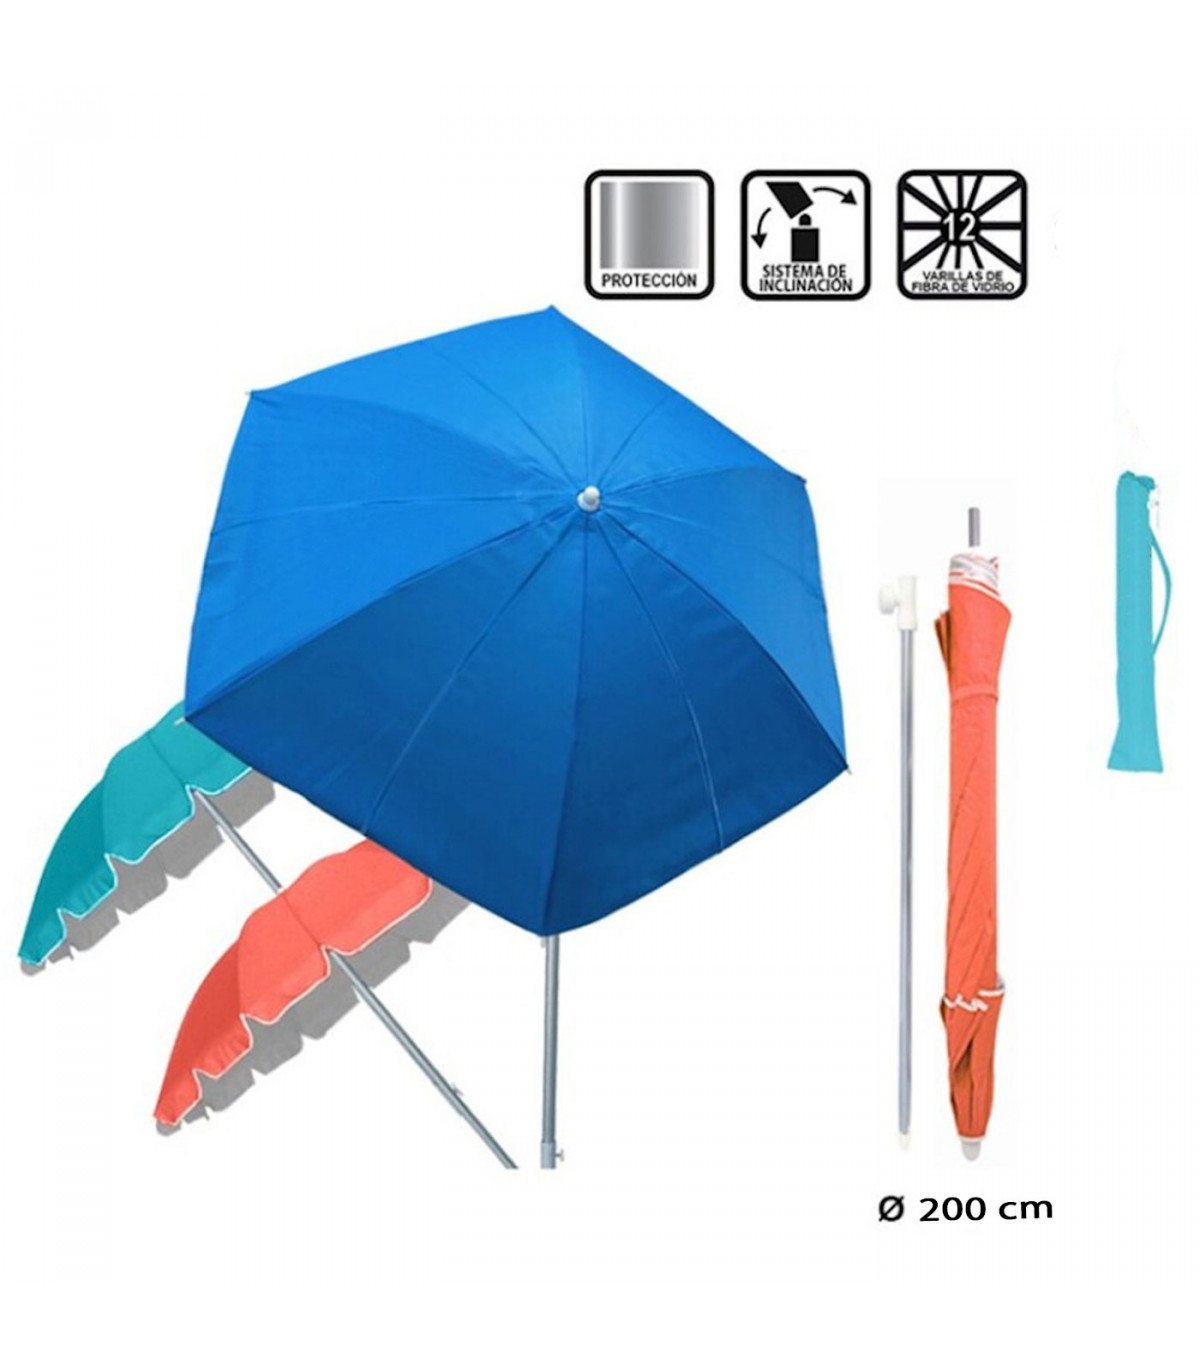 Tradineur - Sombrilla para playa de aluminio 200 cm, parasol de colores, quitasol regulable, diseño y colo